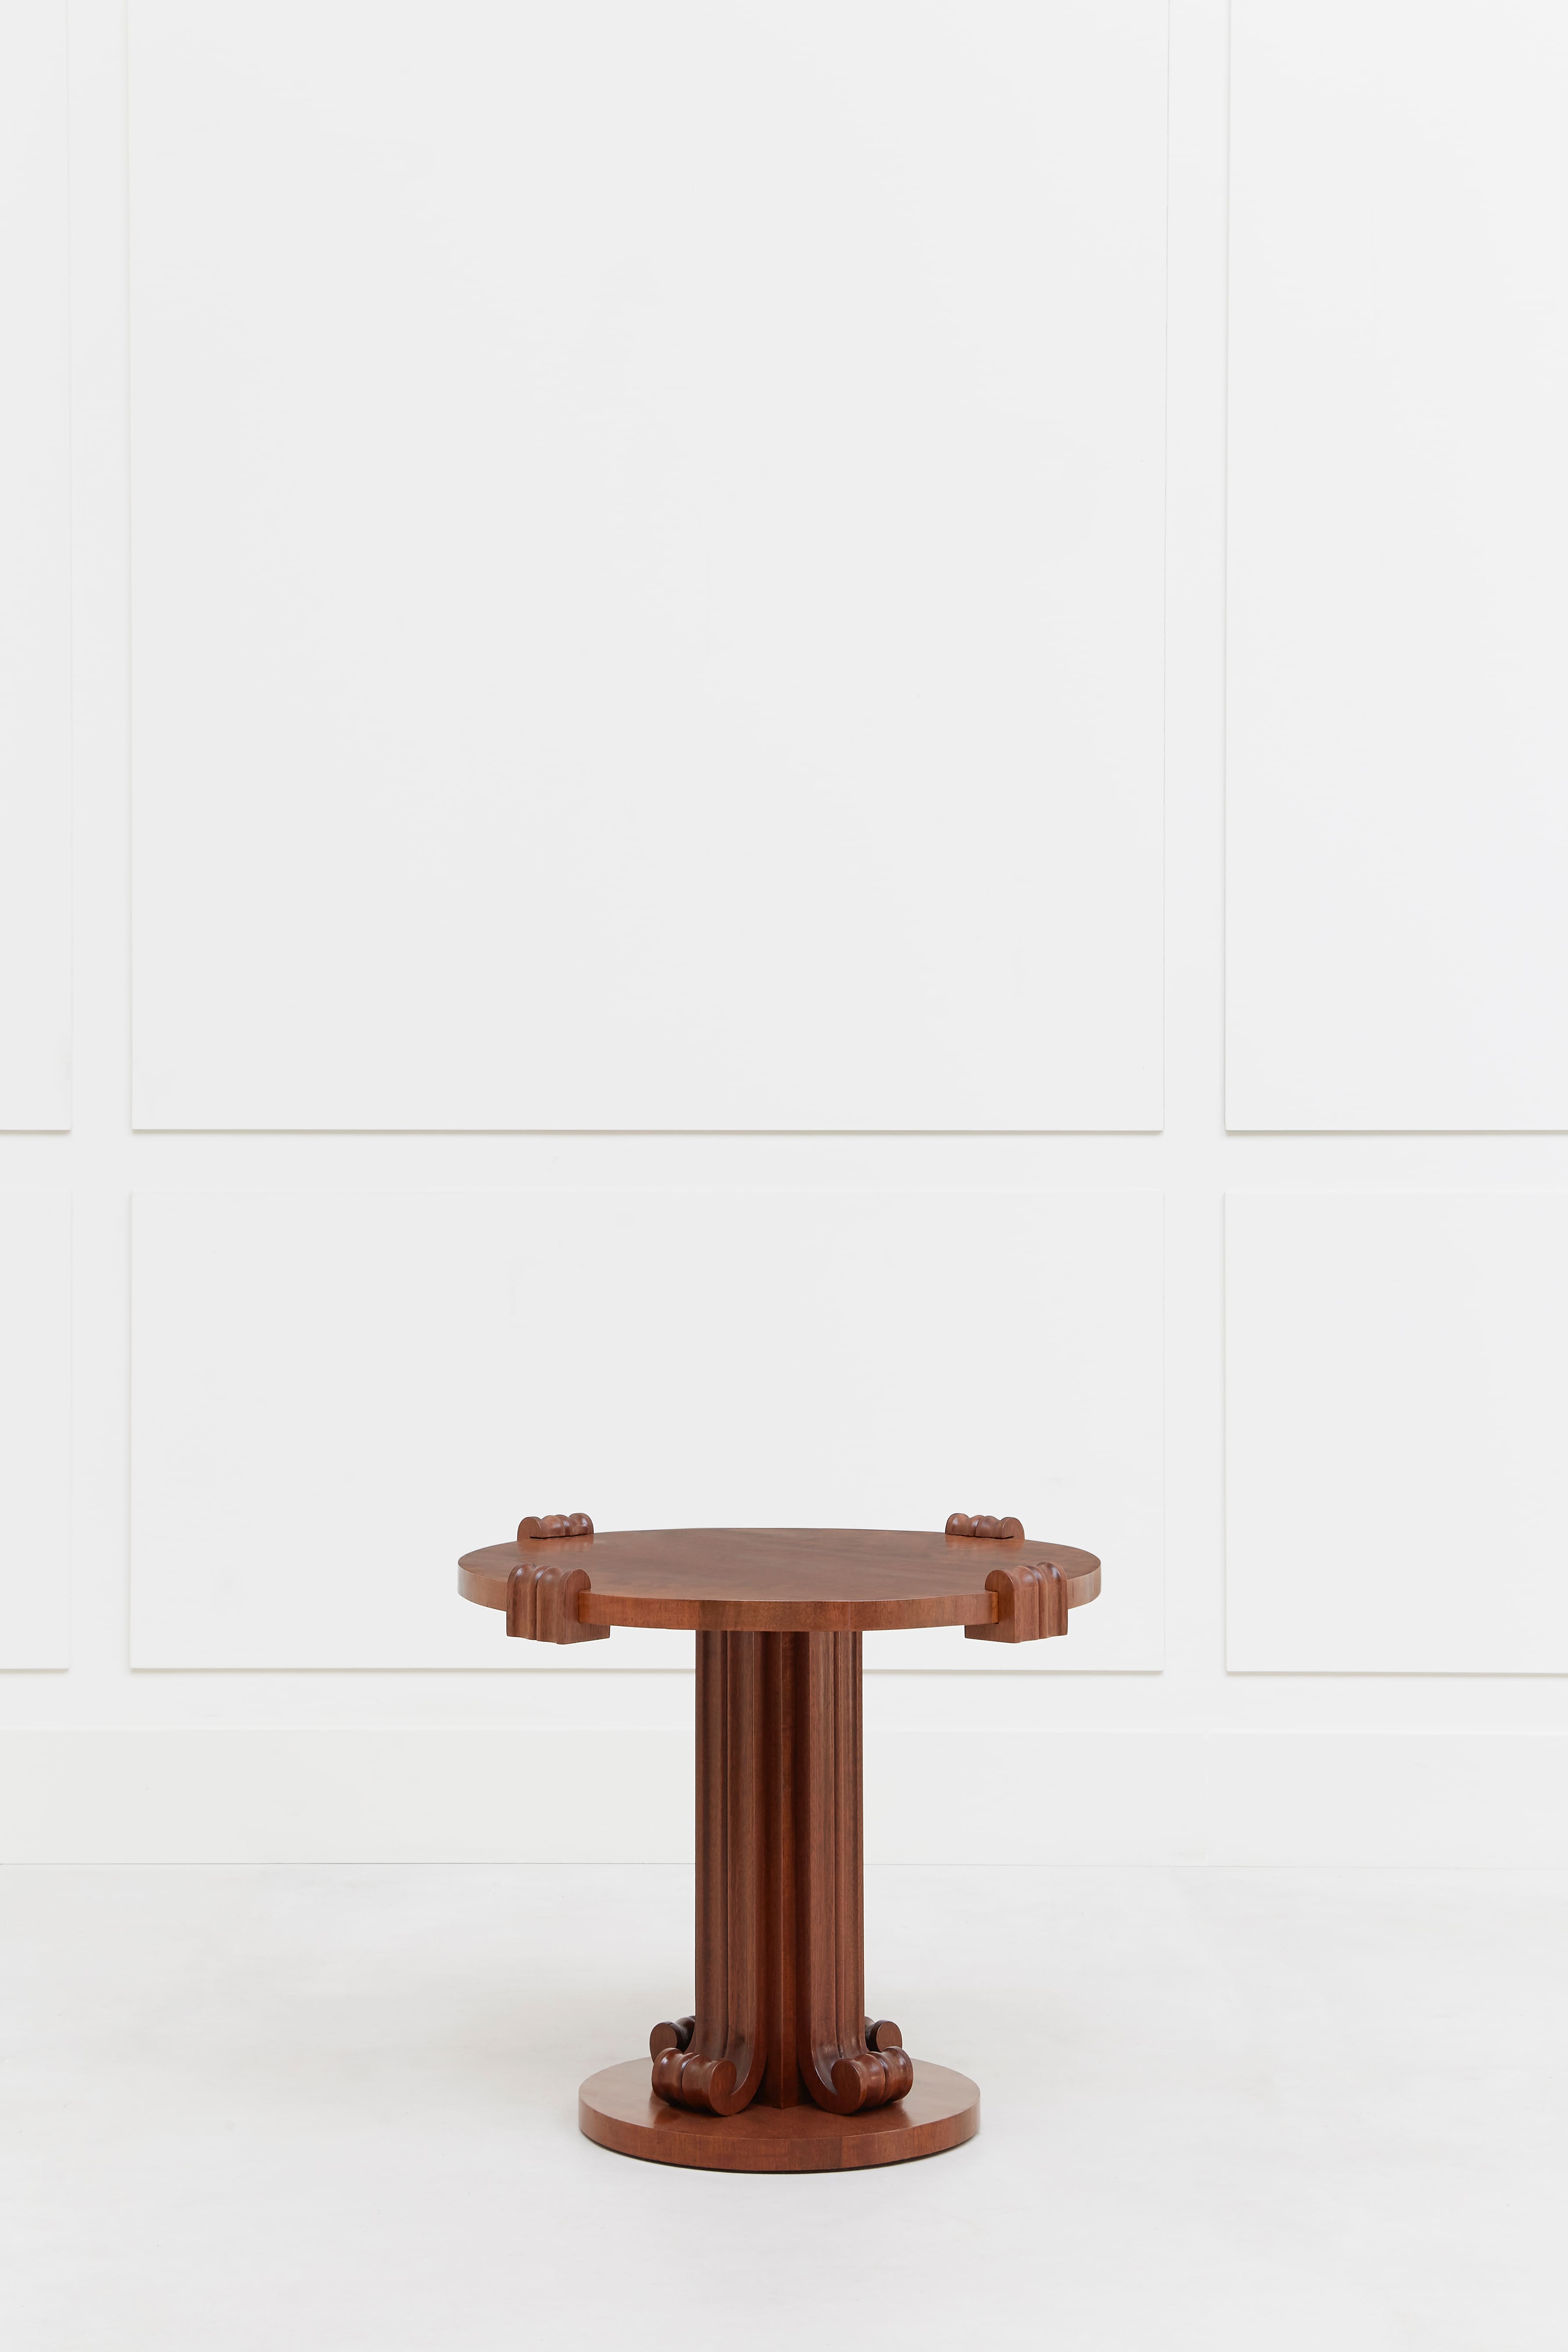 Jean-Charles Moreux, Pedestal table, vue 01